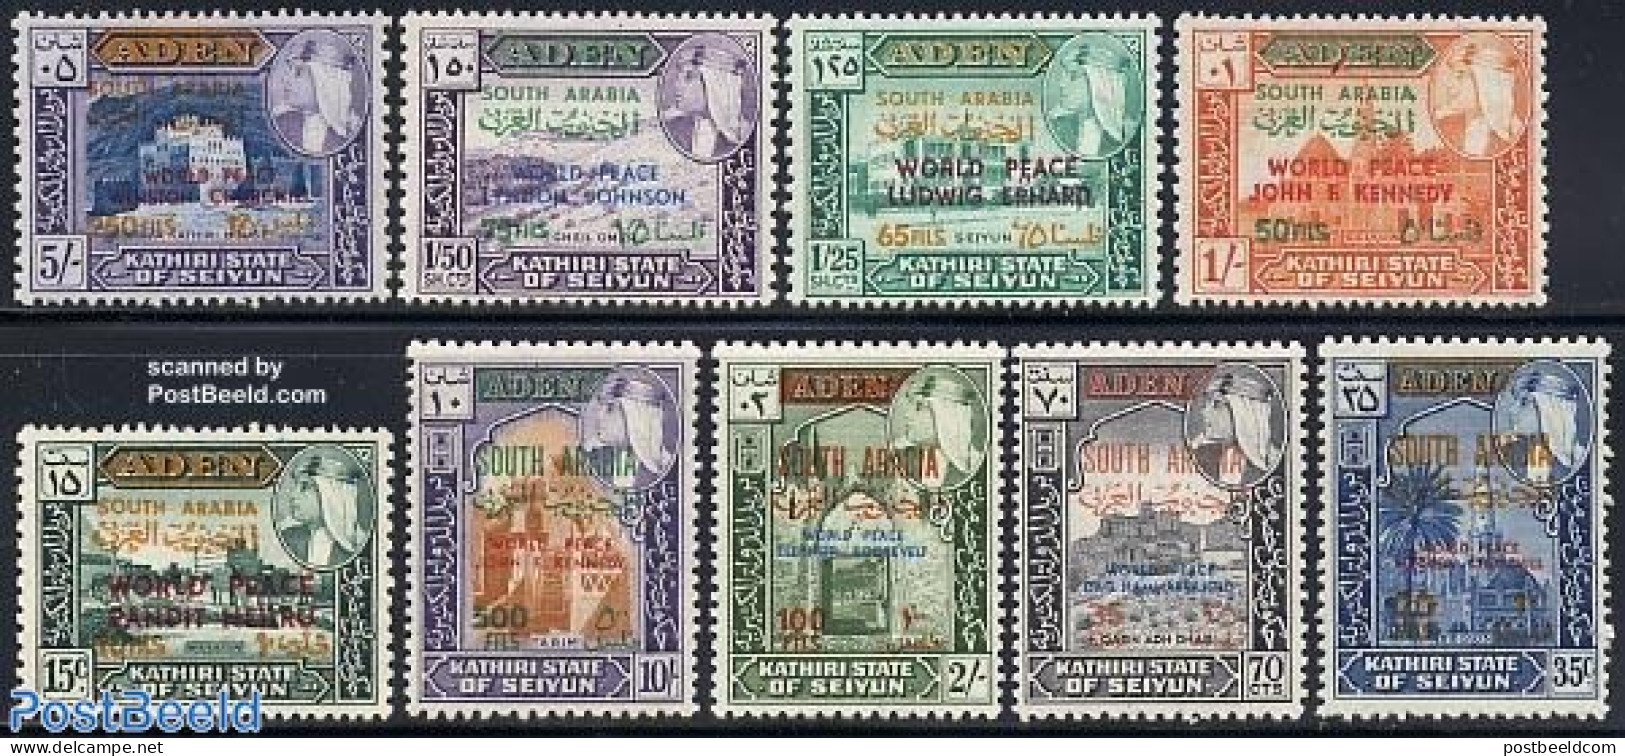 Aden 1967 Seiyun, World Peace Overprints 9v, Mint NH, Art - Castles & Fortifications - Châteaux